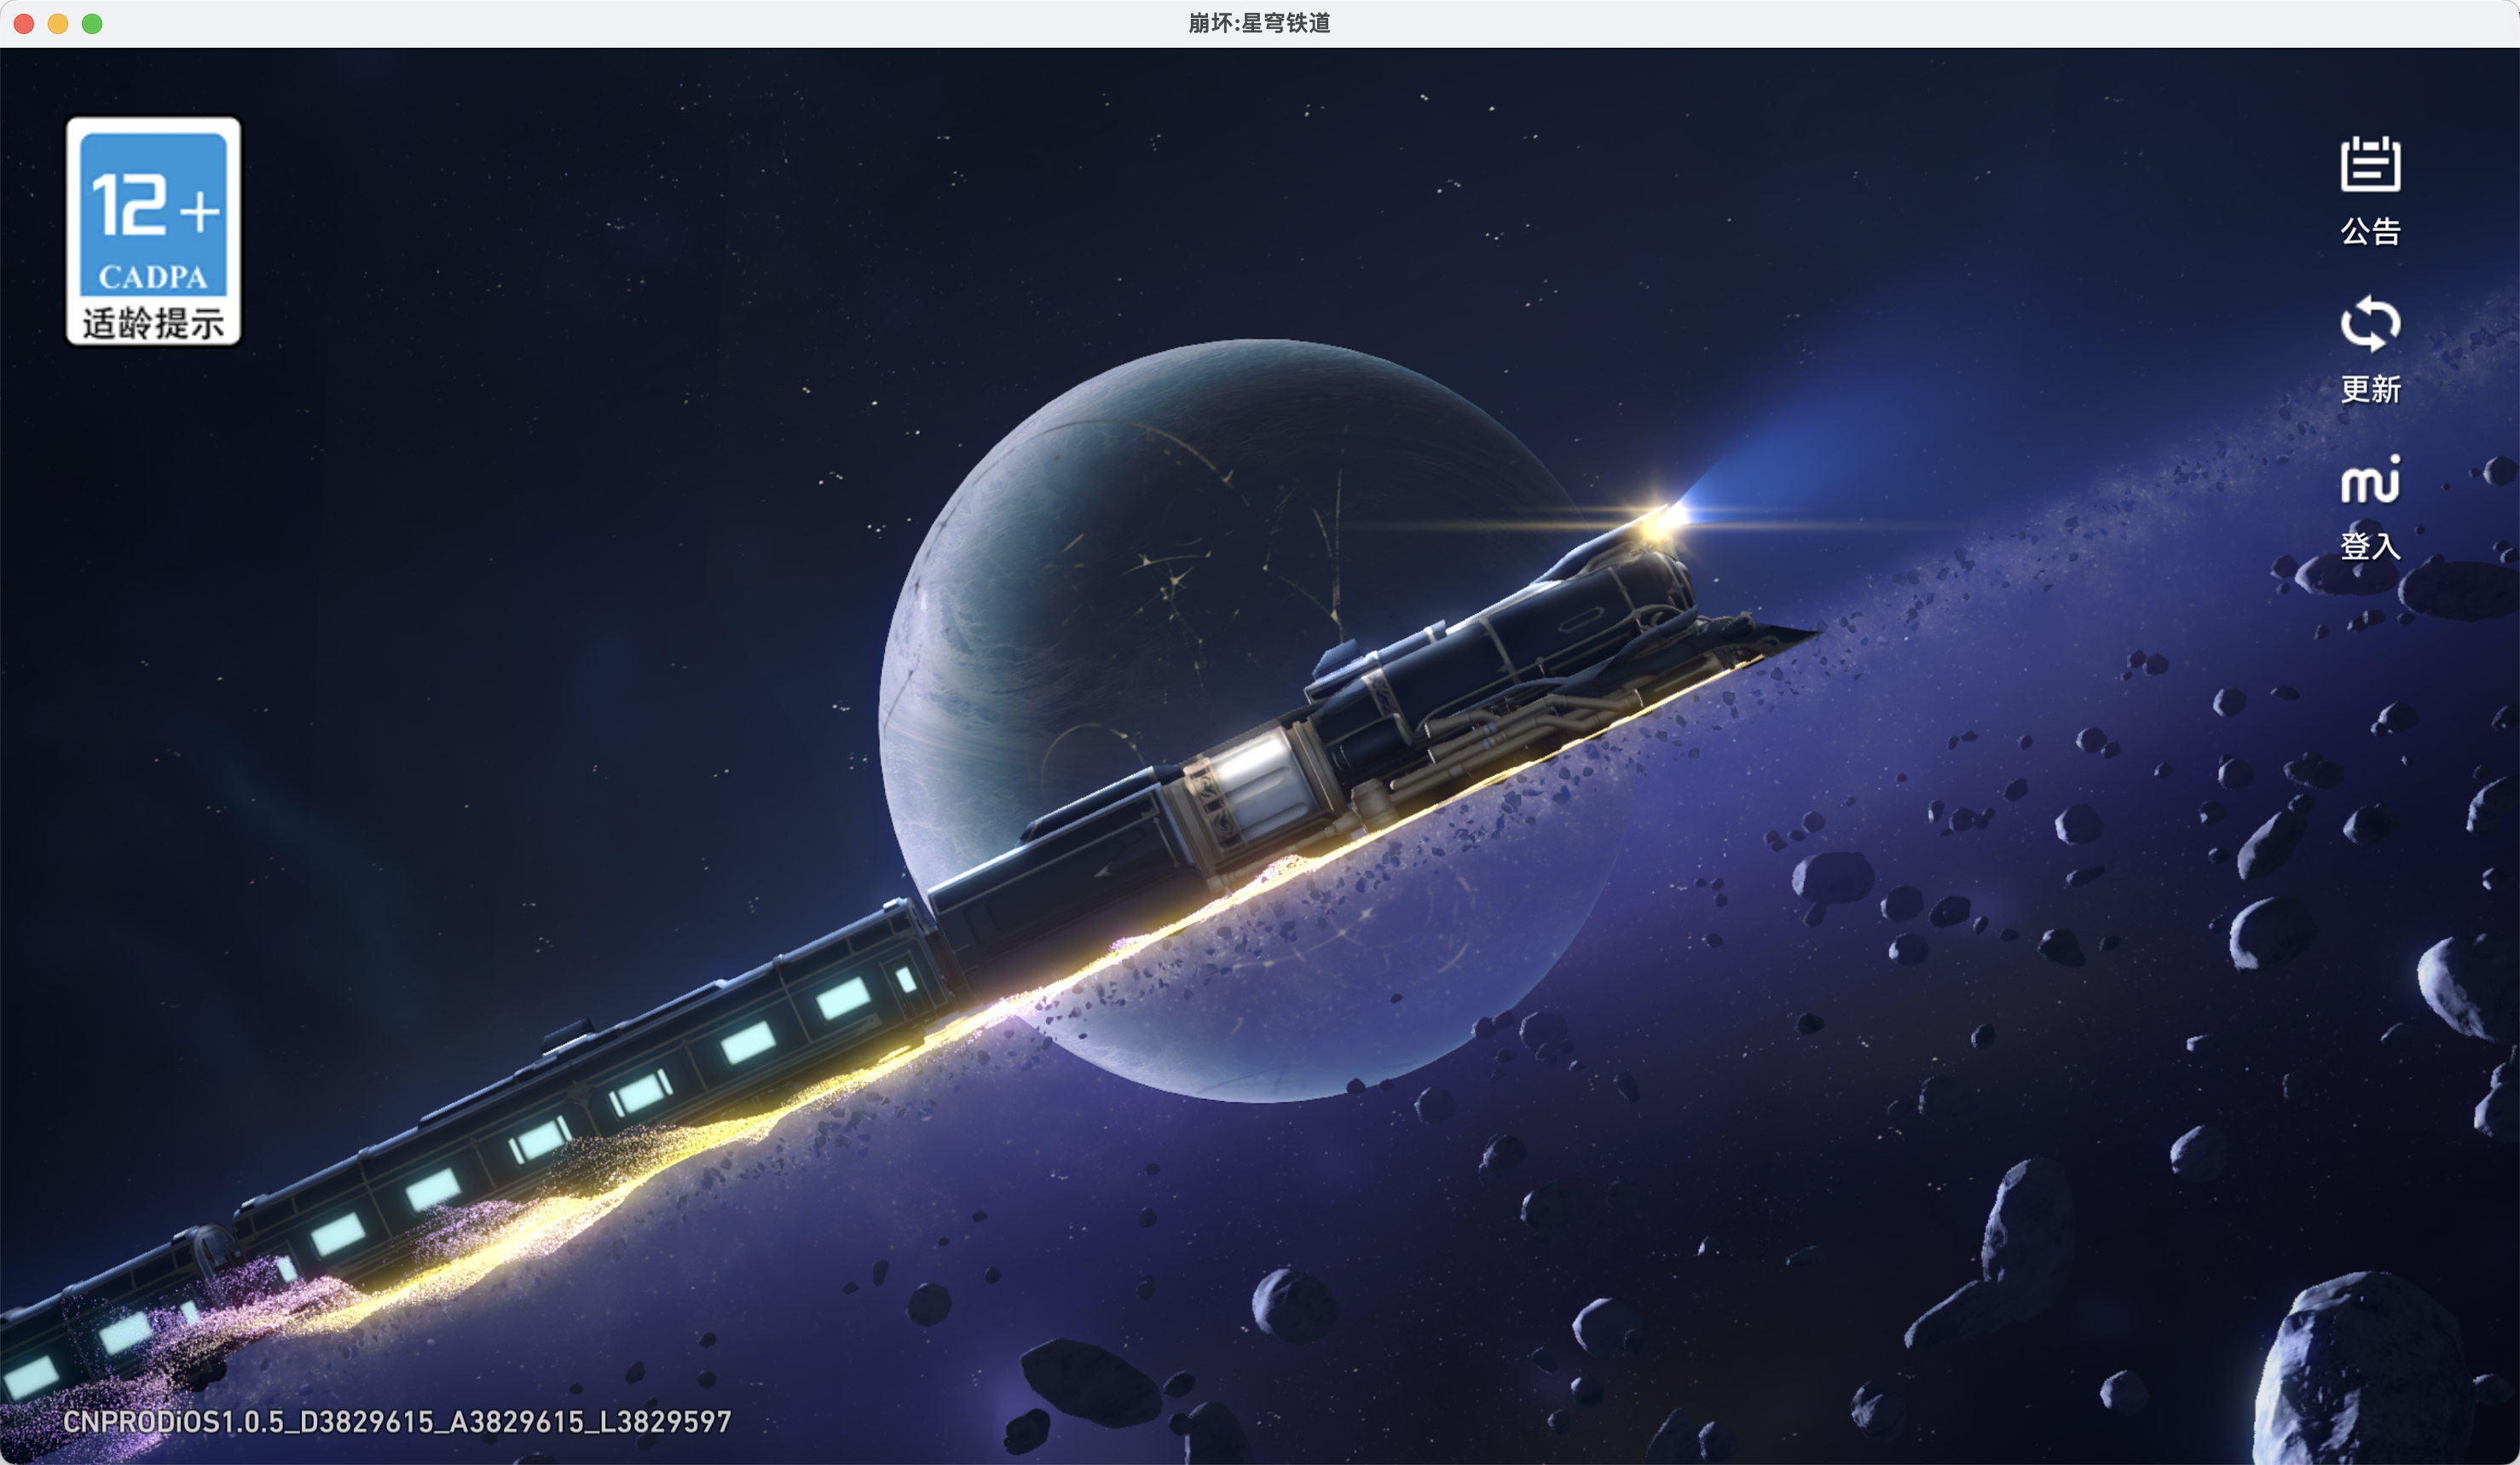 崩坏：星穹铁道 for Mac IOS转Mac版 造访寓居宇宙的万象世界 苹果电脑